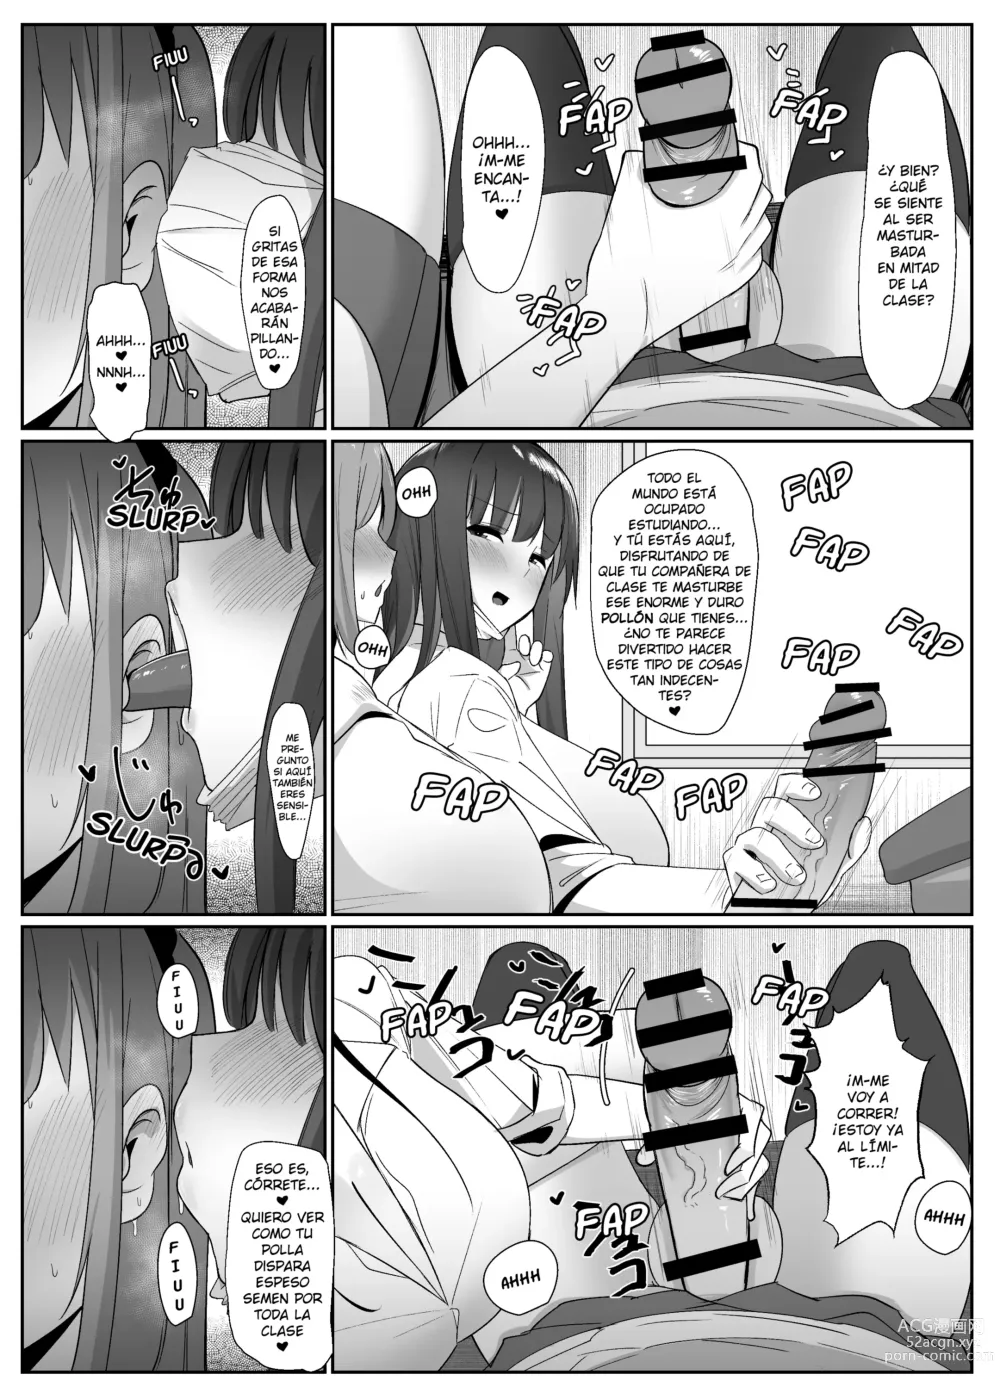 Page 11 of doujinshi ¡Un día me desperté y de repente hacer eyacular a las futanaris era lo más normal del mundo!